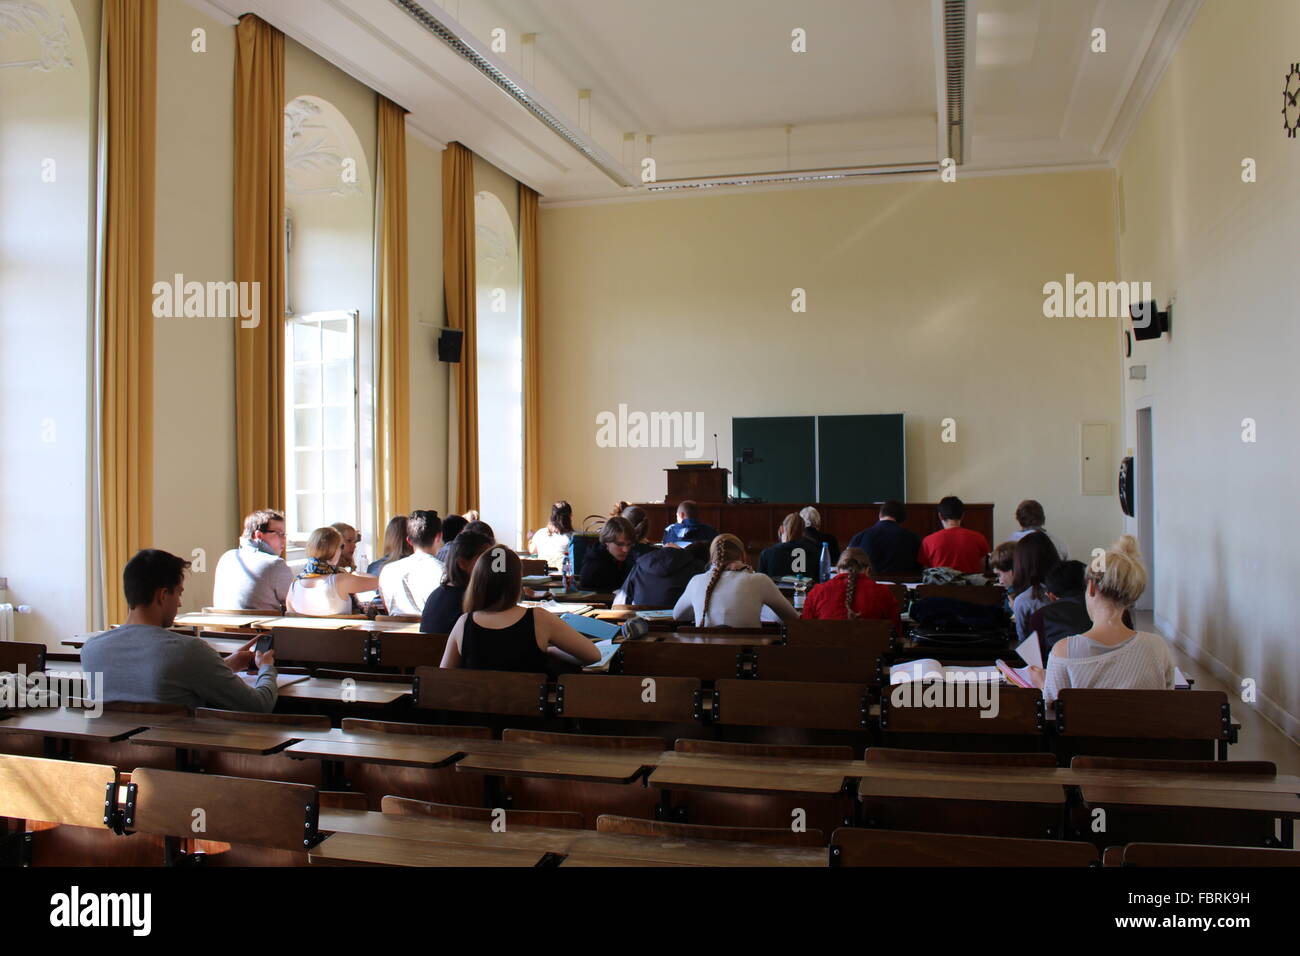 L'Université de Bonn, Allemagne, Bonn, regarder dans une salle avec public Banque D'Images